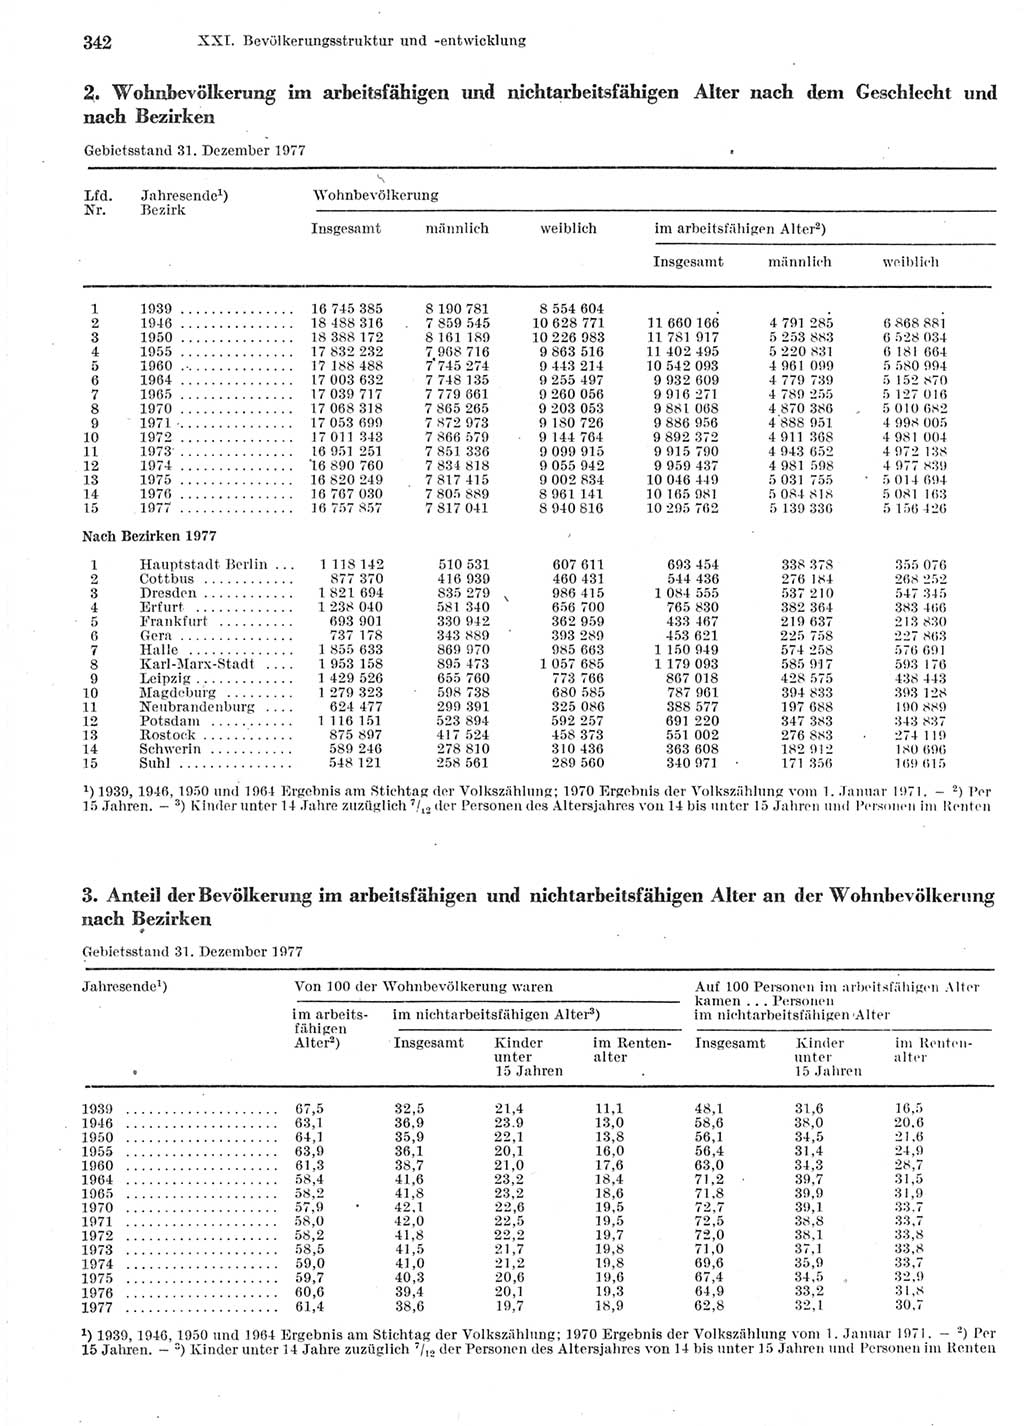 Statistisches Jahrbuch der Deutschen Demokratischen Republik (DDR) 1978, Seite 342 (Stat. Jb. DDR 1978, S. 342)